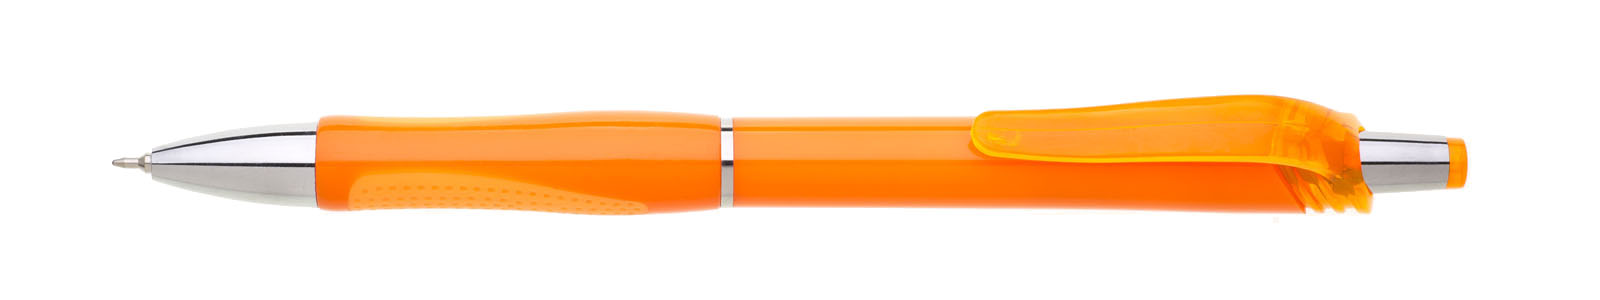 Propiska plast FLORI s náplní semigel, oranžová